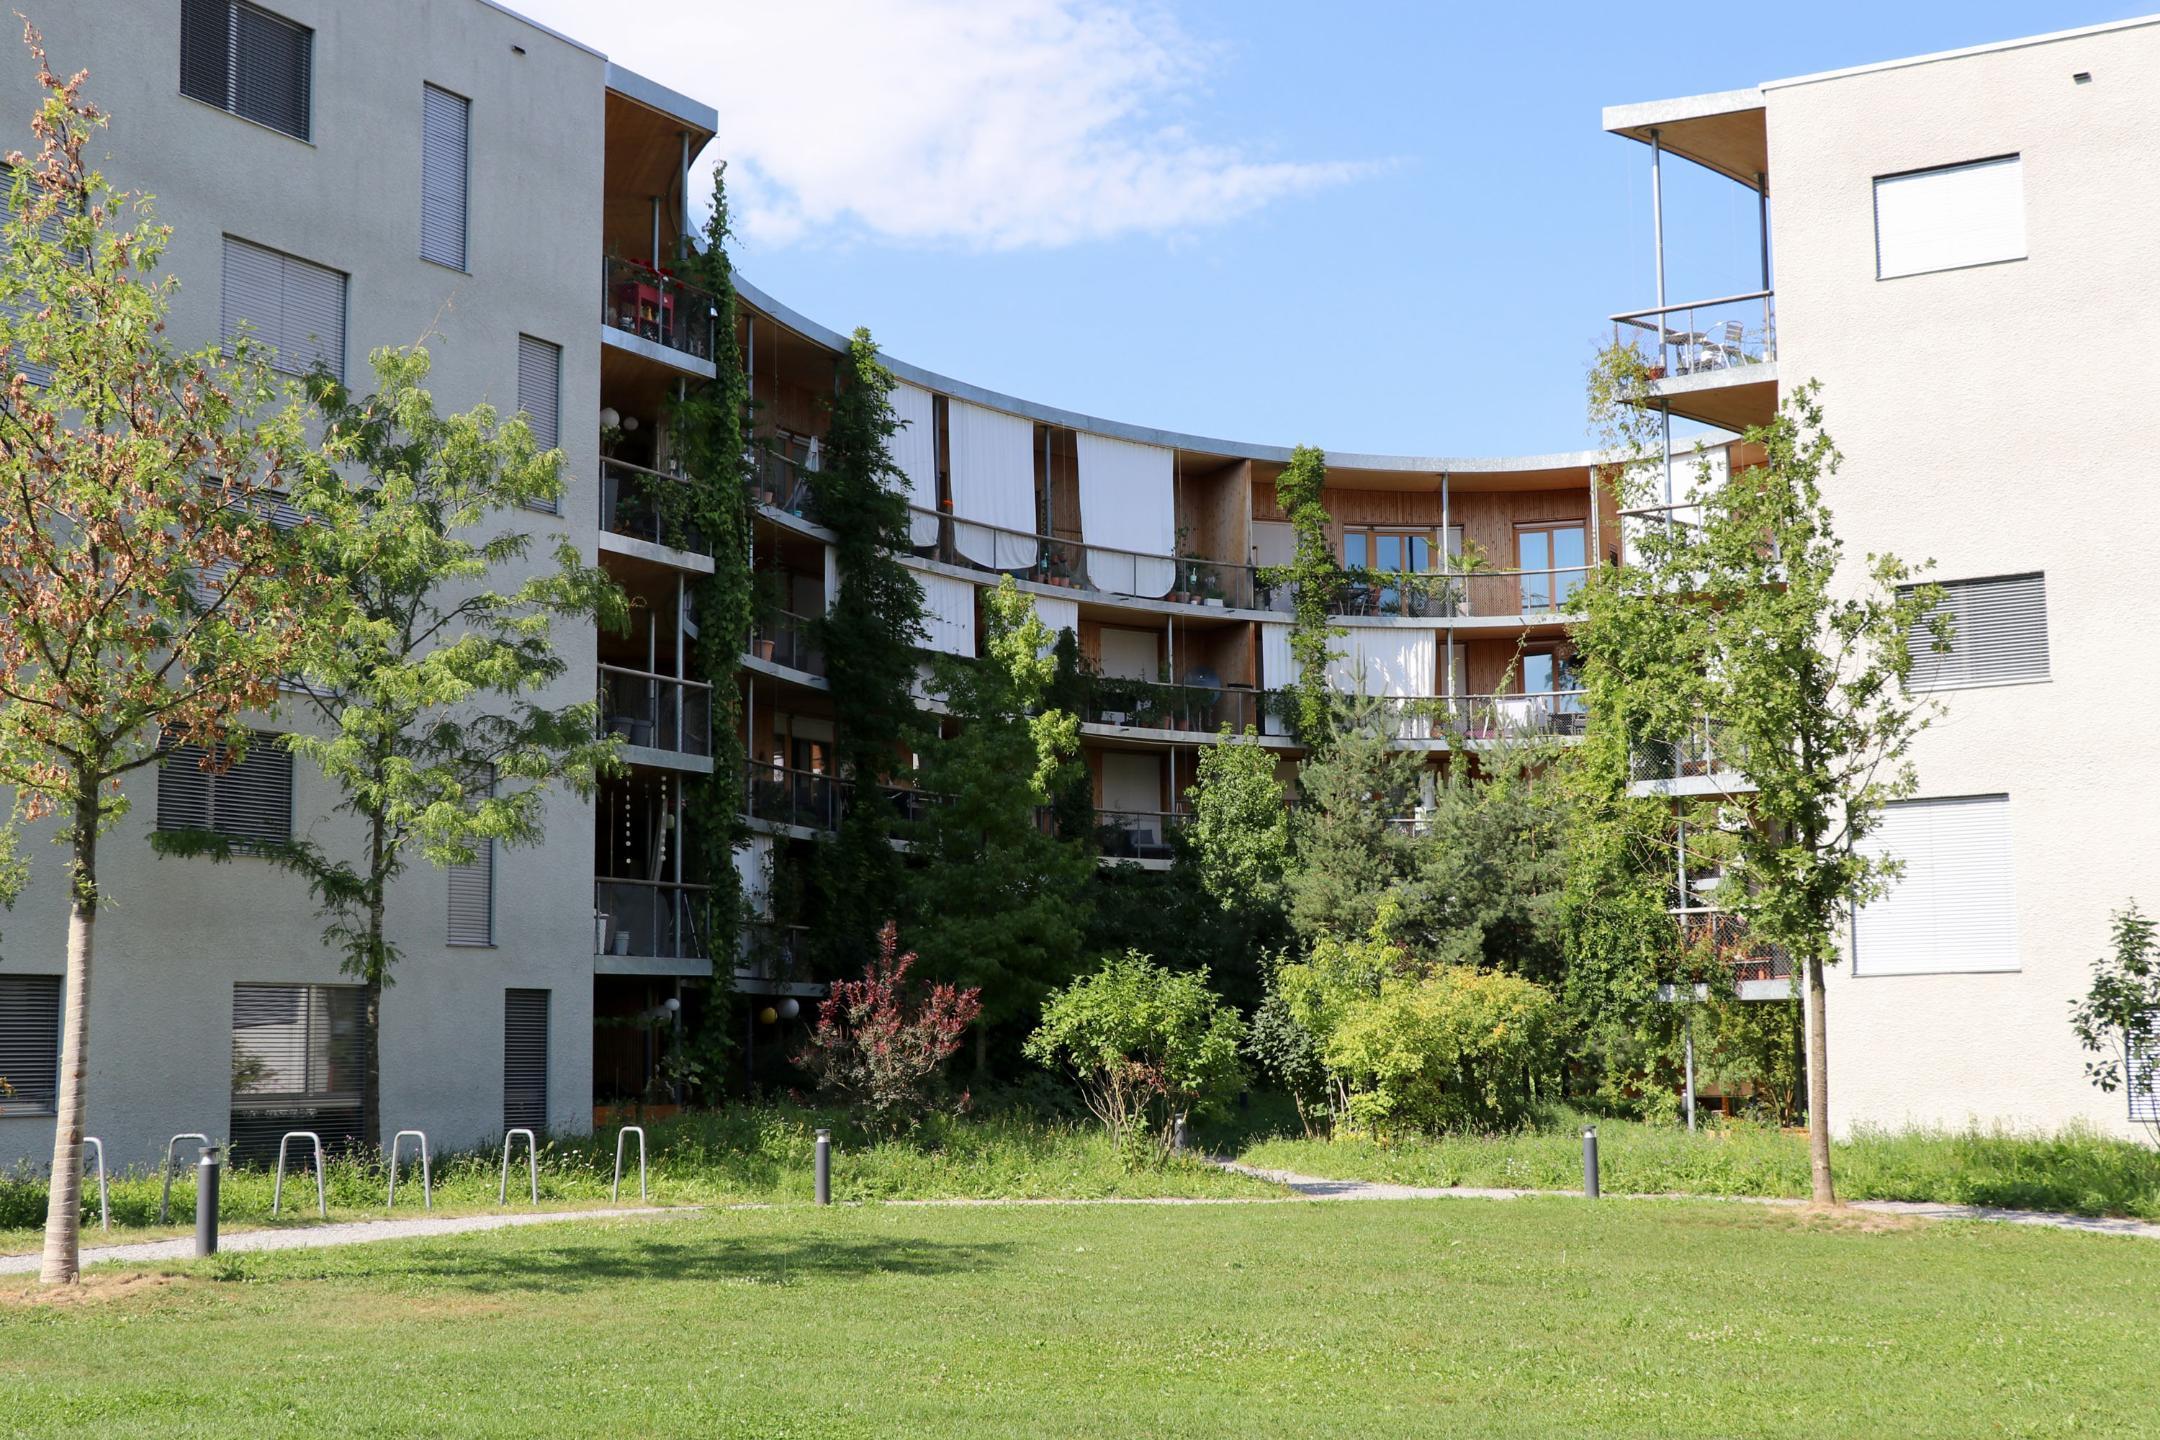 Naturnah gestalteter Innenhof in der Holunderhof Siedlung in Zürich mit Bäumen, Sträuchern, Stauden und Gräsern.